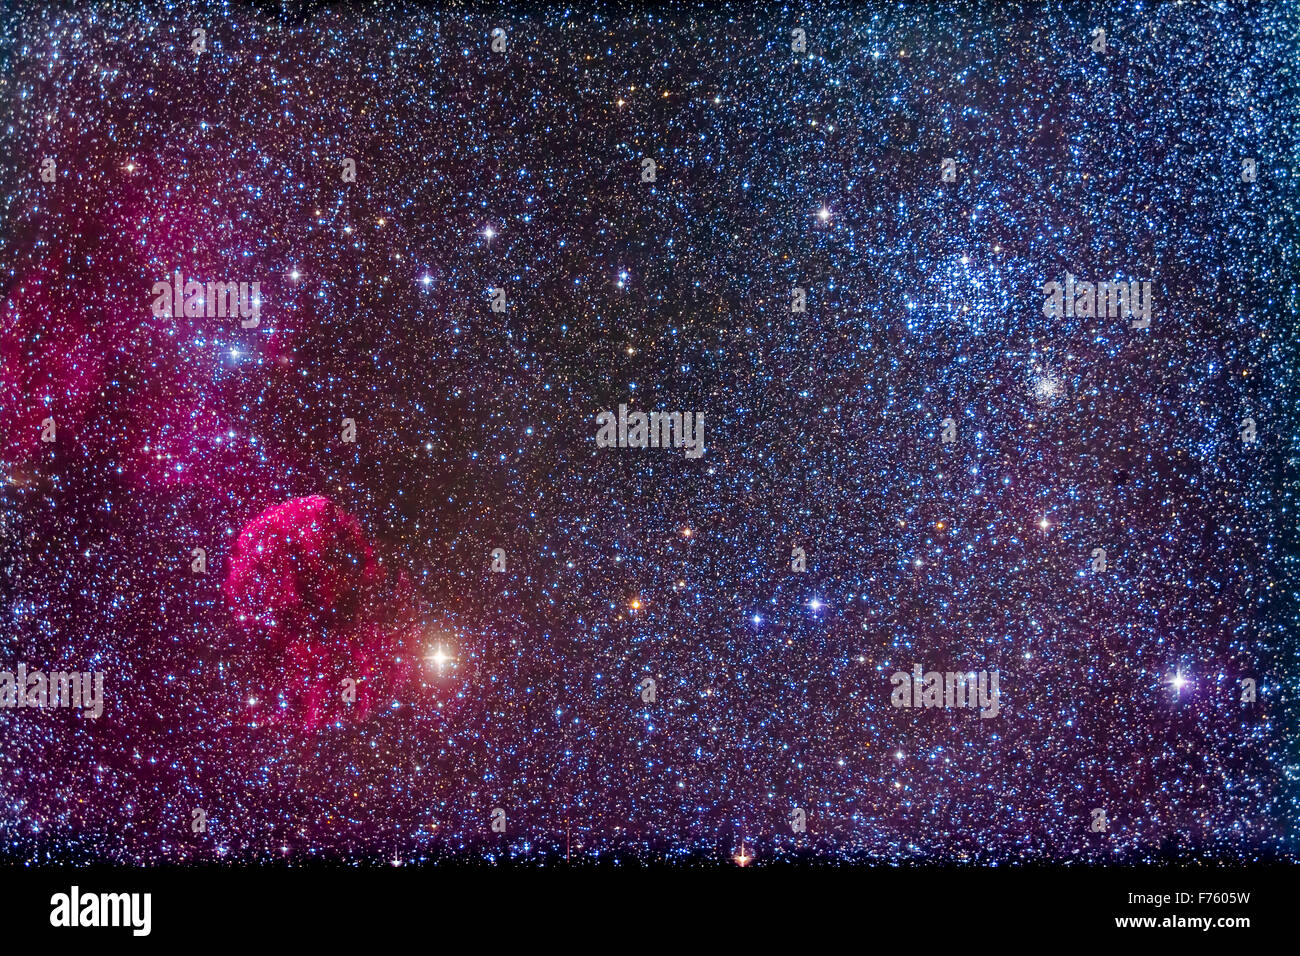 Die Quallen Nebula, IC 443, auf der linken Seite in der Nähe der Stern Eta Geminorum auf der linken Seite. IC 443 ist ein Supernova-Überrest. Im oberen Flug ist die b Stockfoto